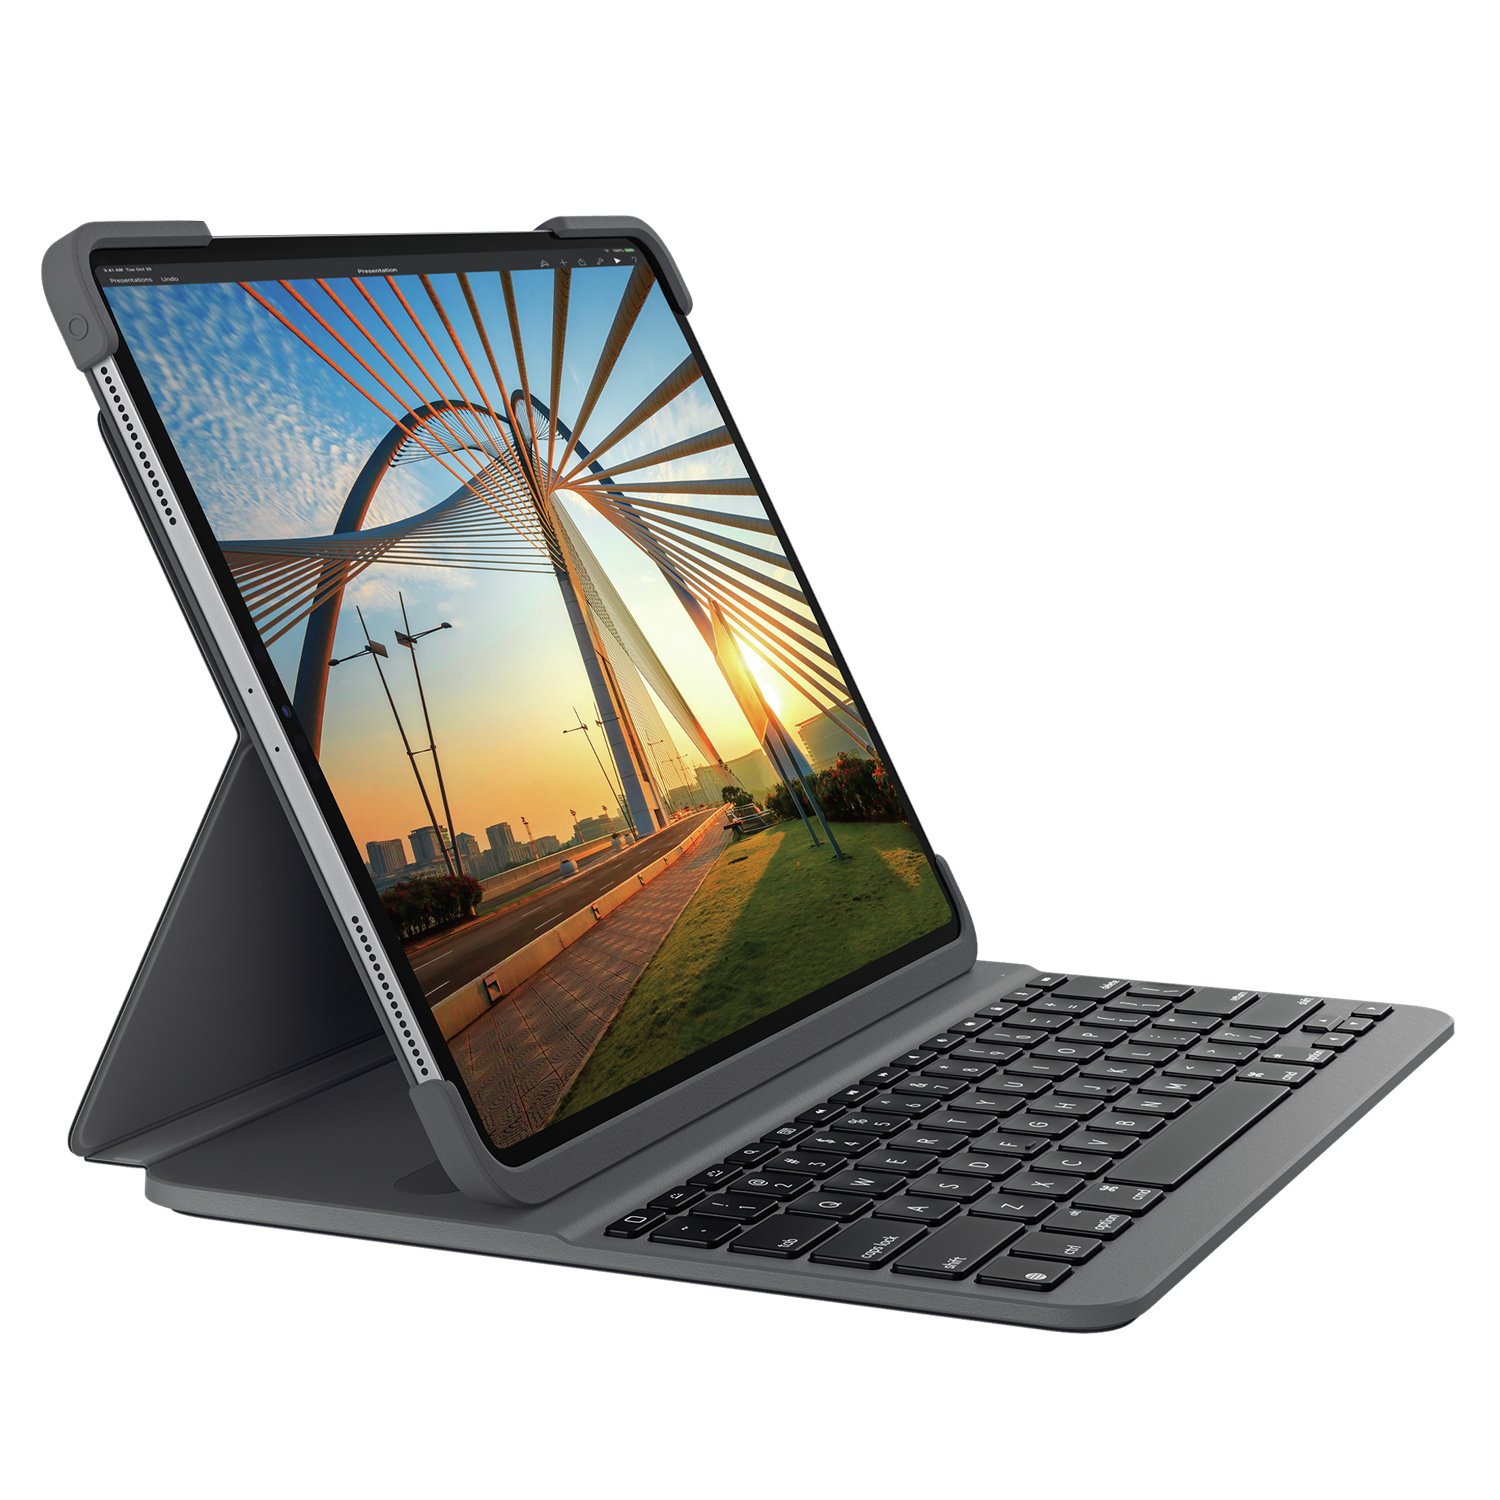 Logitech iPad Pro 11 Inch Slim Keyboard Case Review